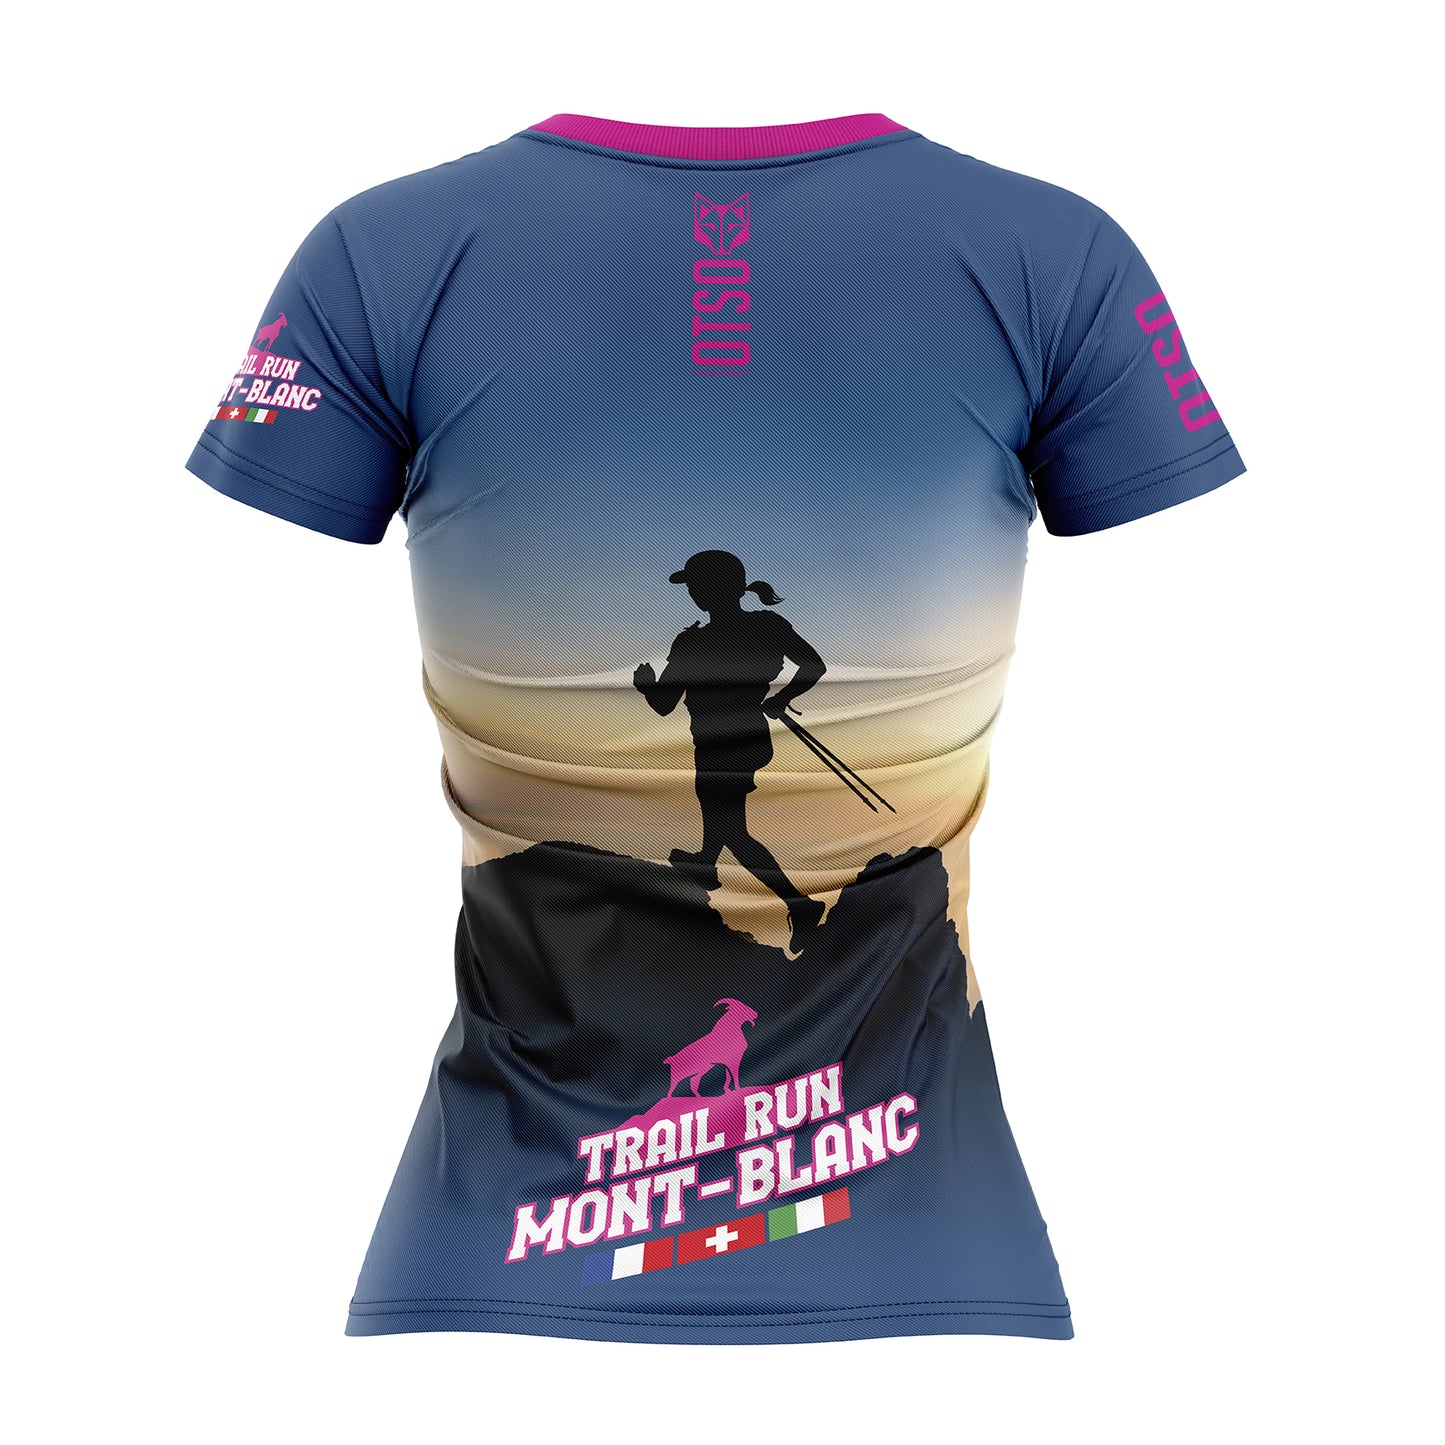 Camiseta manga corta mujer - Trail Run Montblanc Pink (Outlet)